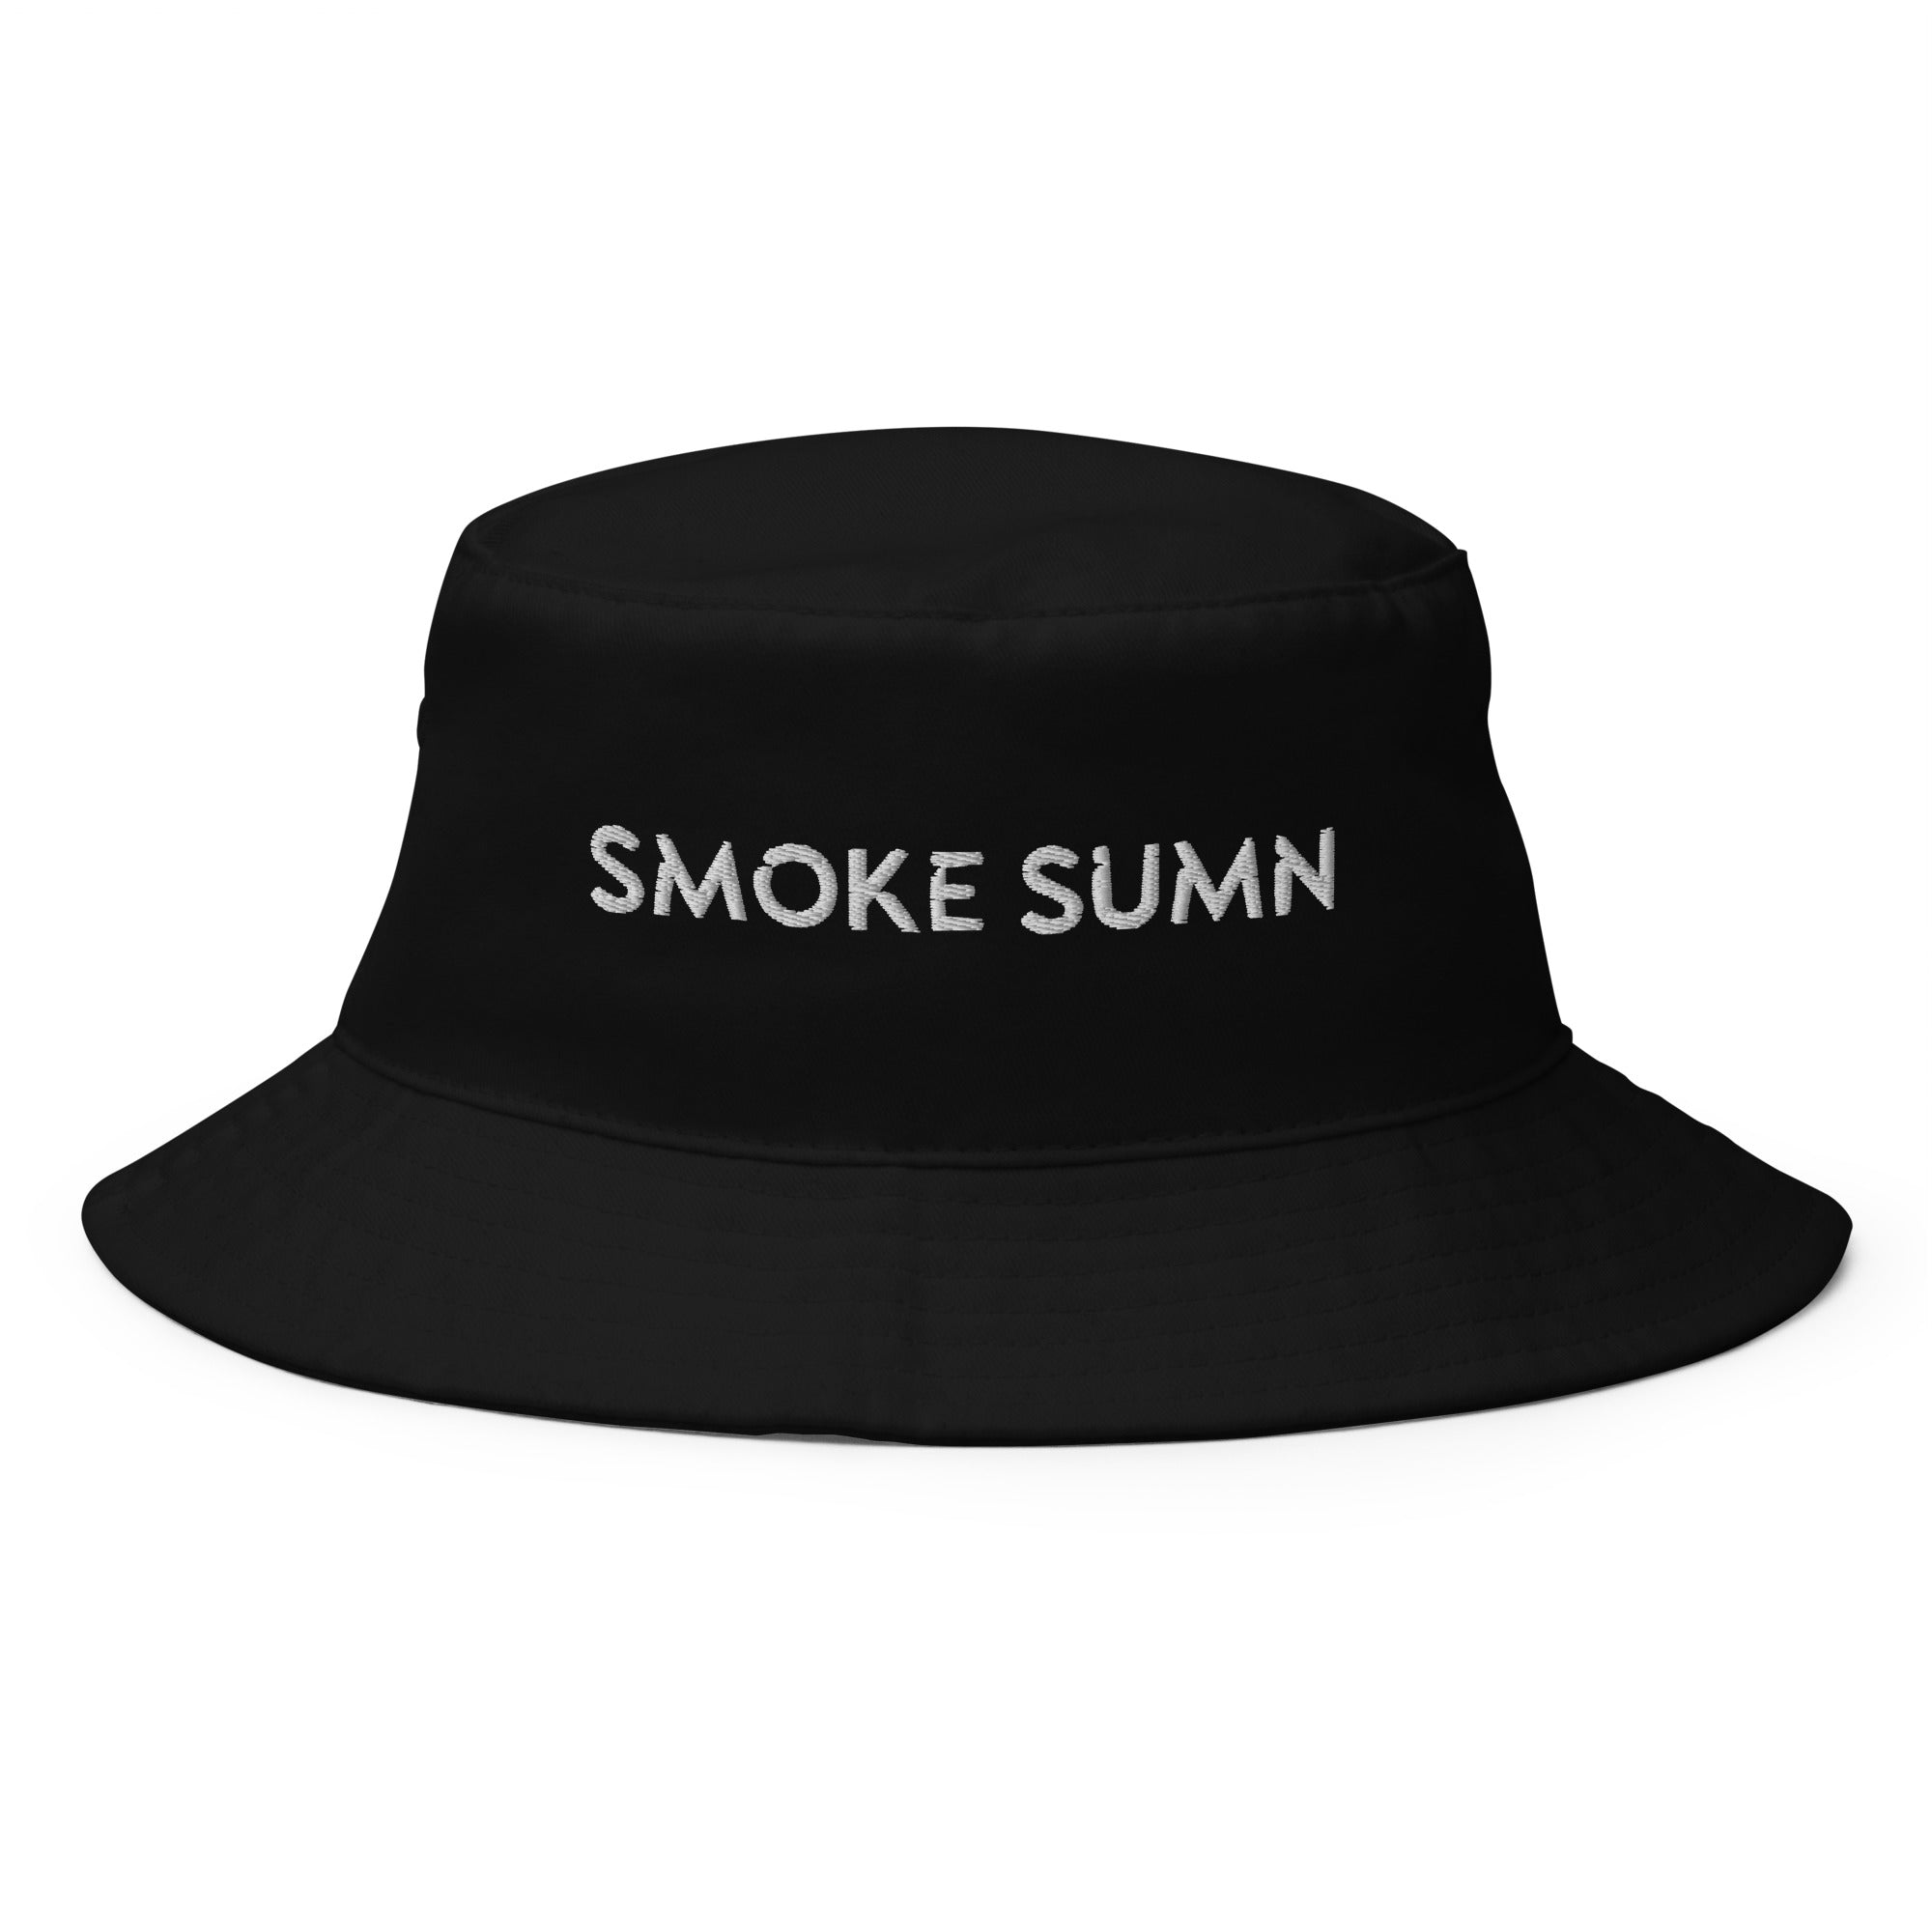 Big Haze - Bucket Hat